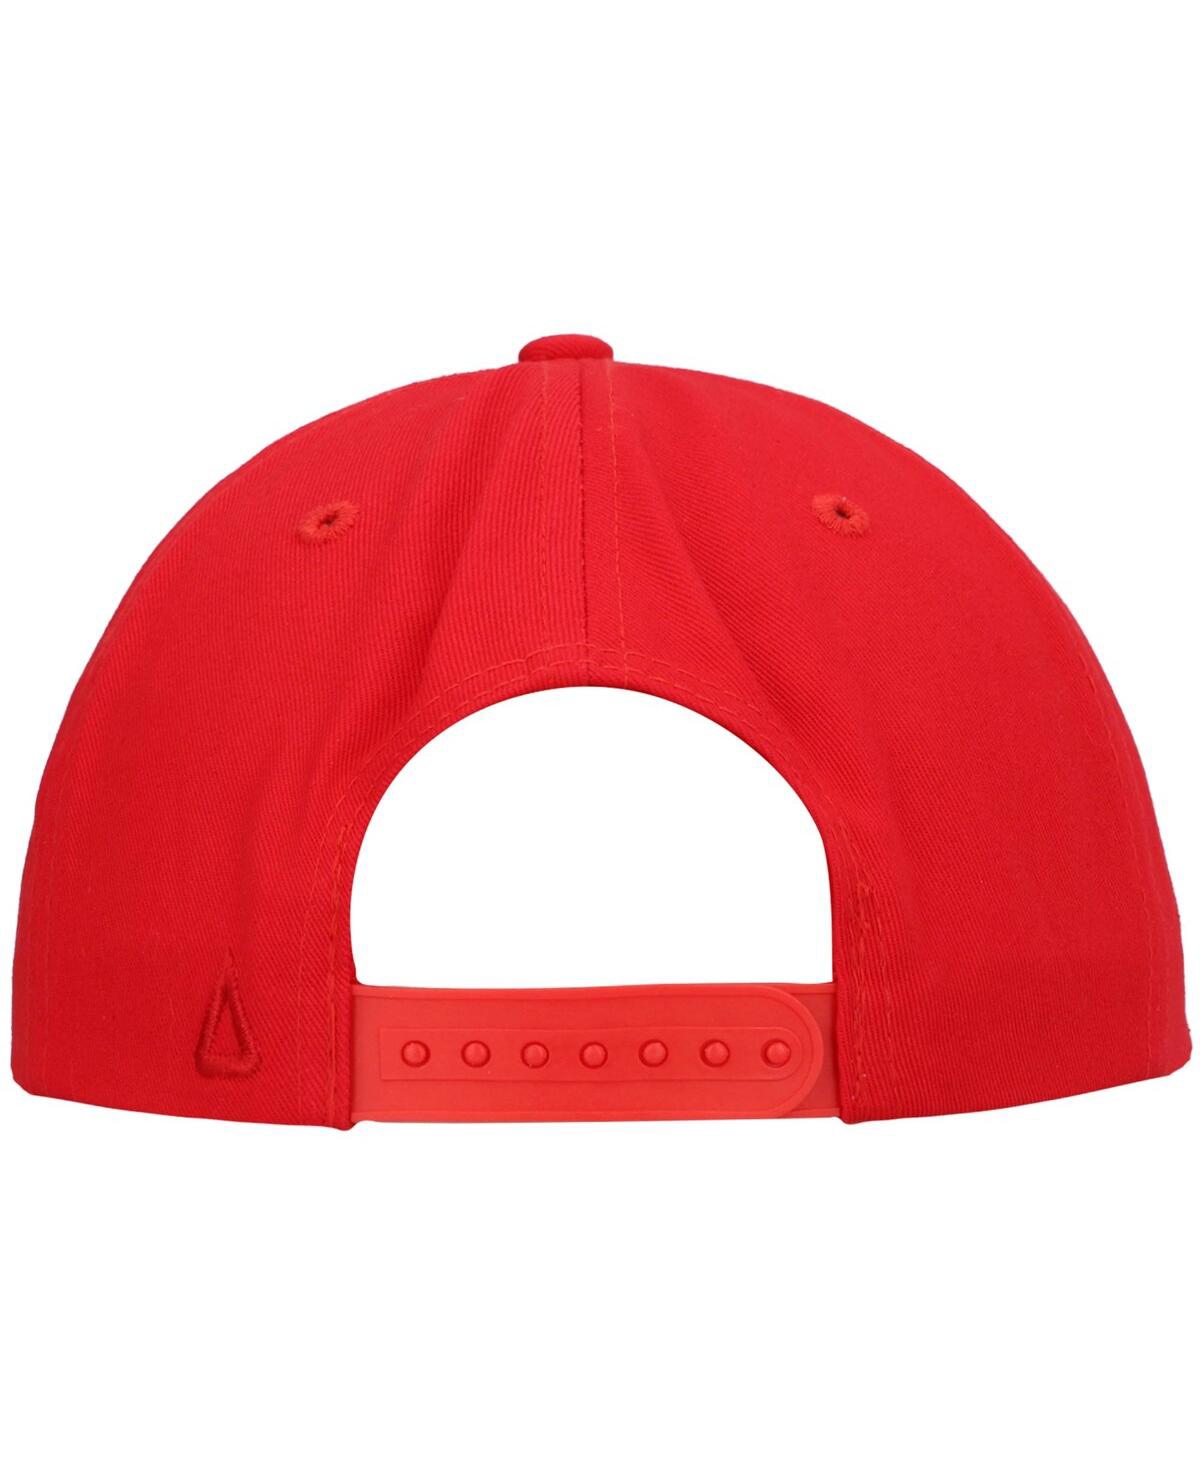 Shop Ahead Men's  Red Farmers Insurance Open Colonial Snapback Hat